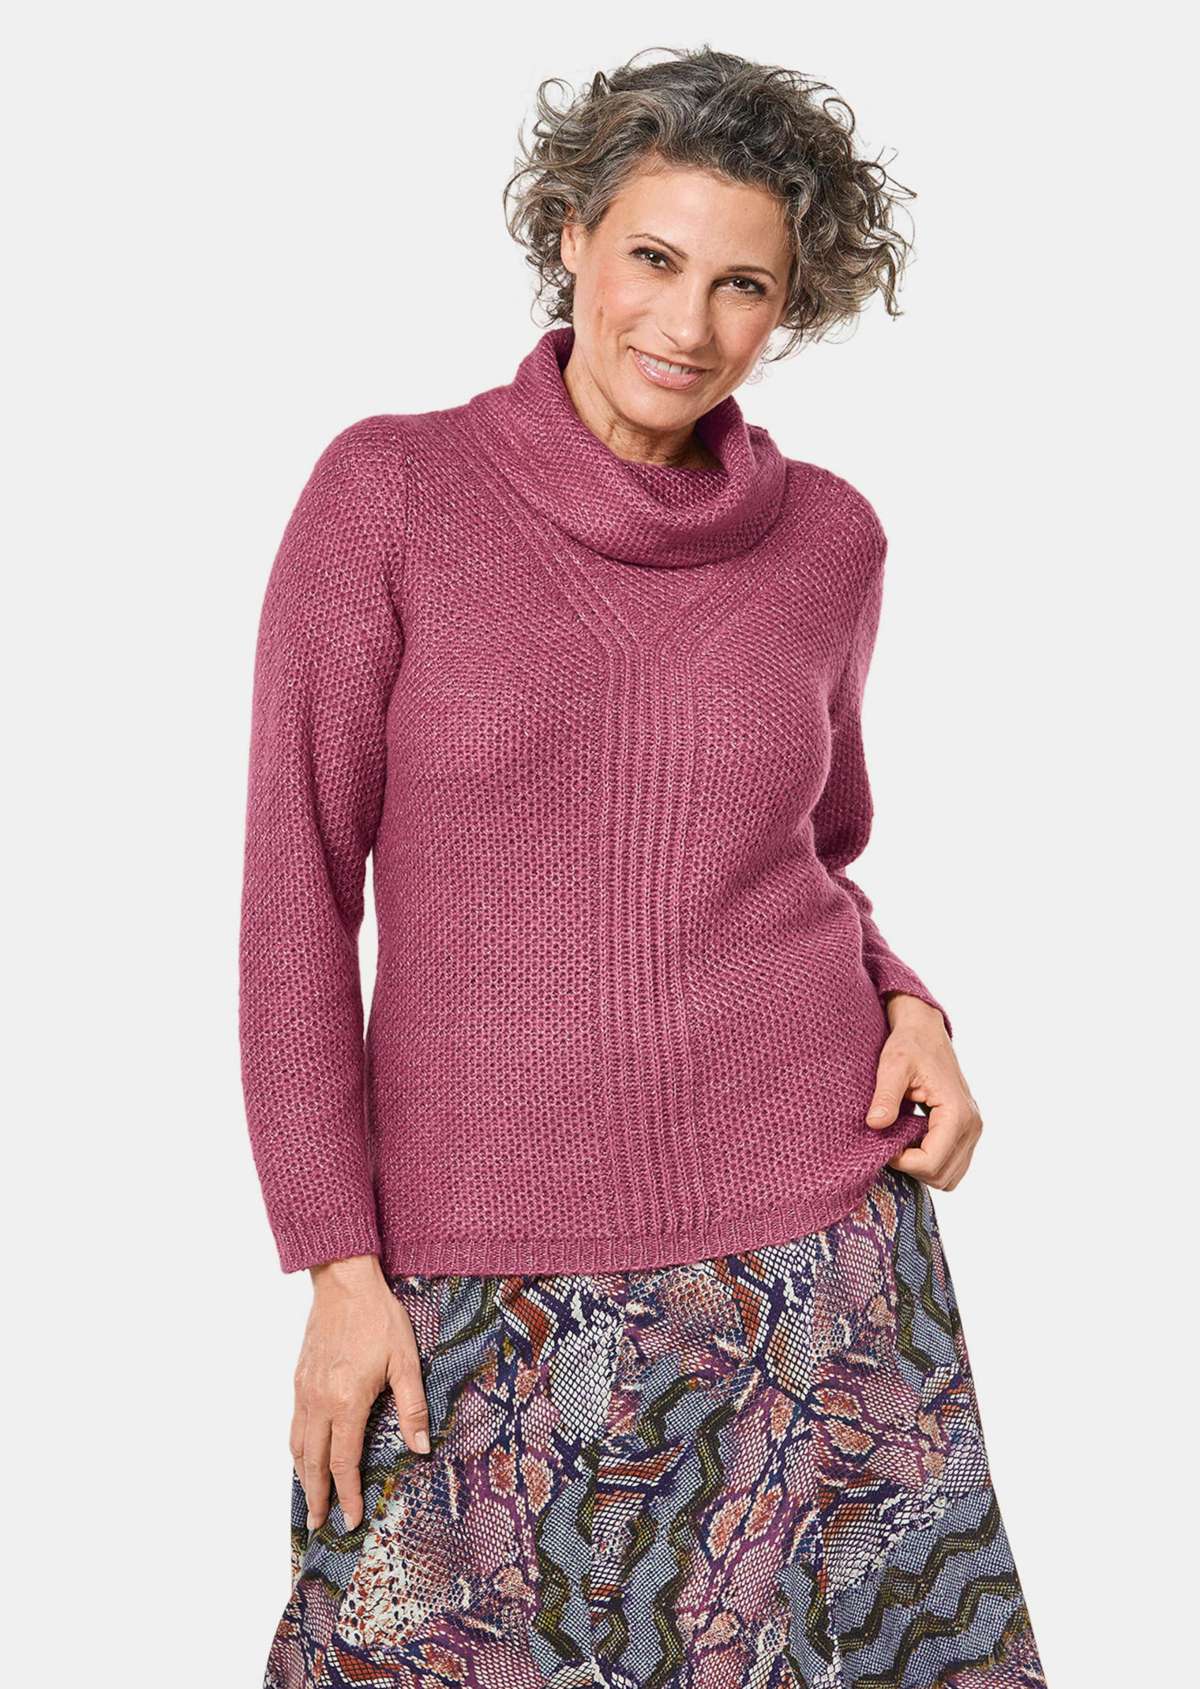 Вязаный свитер с интересной структурой и блестящей пряжей.